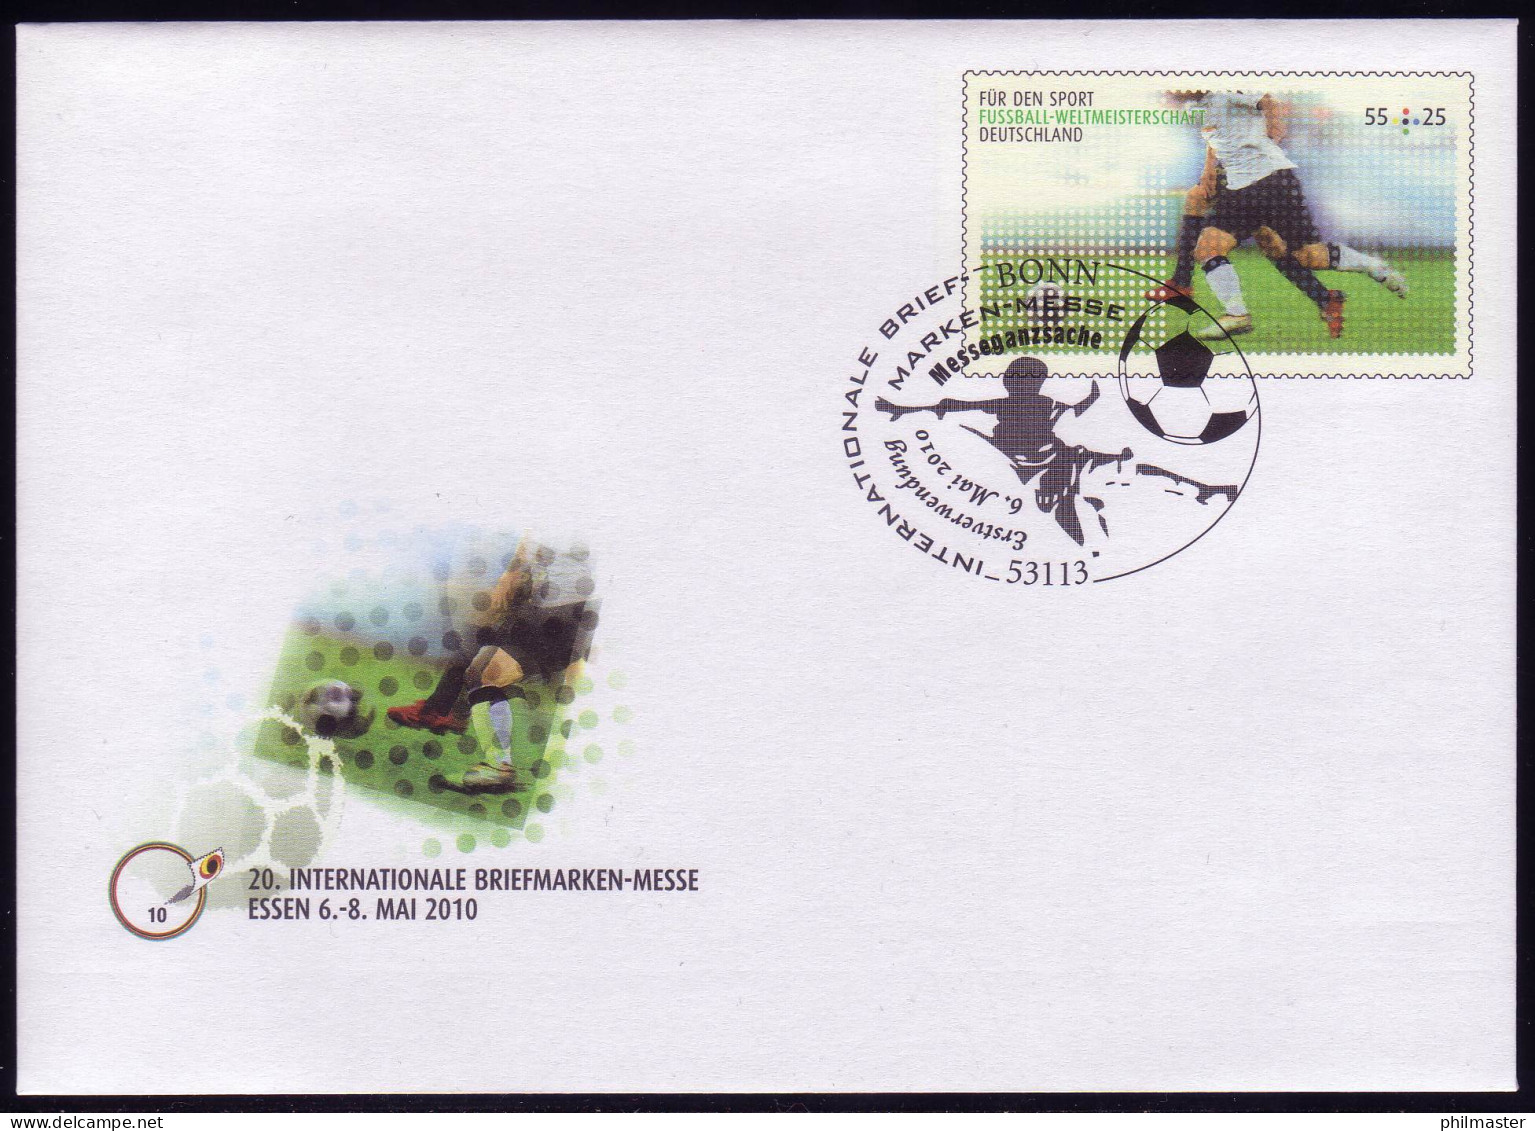 USo 207 Briefmarken-Messe Essen - Fußball-WM 2010, EV-O Bonn 6.5.10 - Umschläge - Ungebraucht